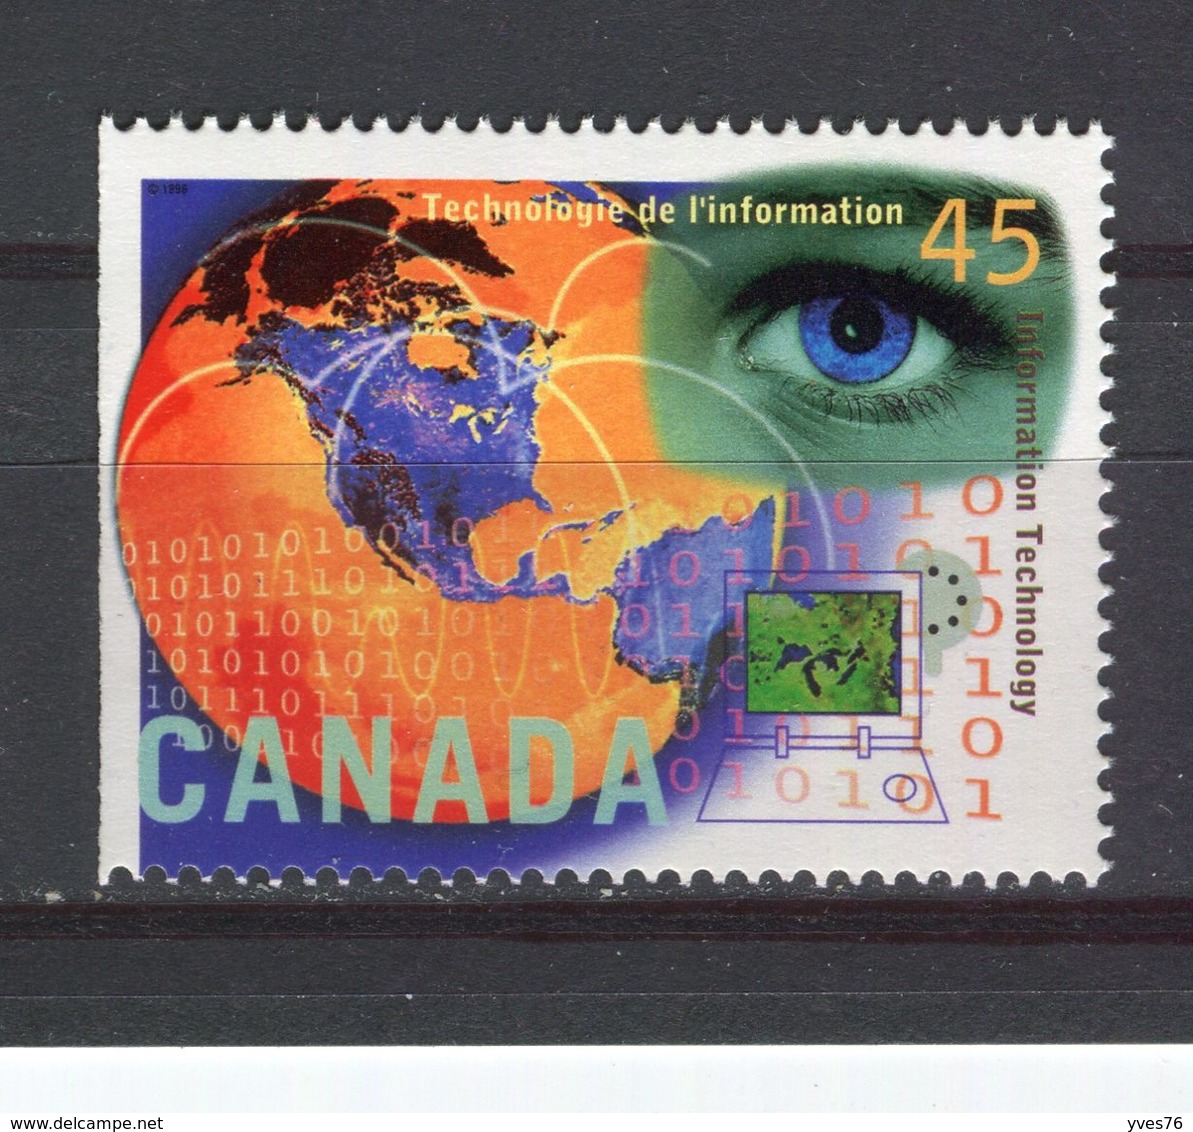 CANADA - Y&T N° 1456** - Technologie De L'information - Neufs